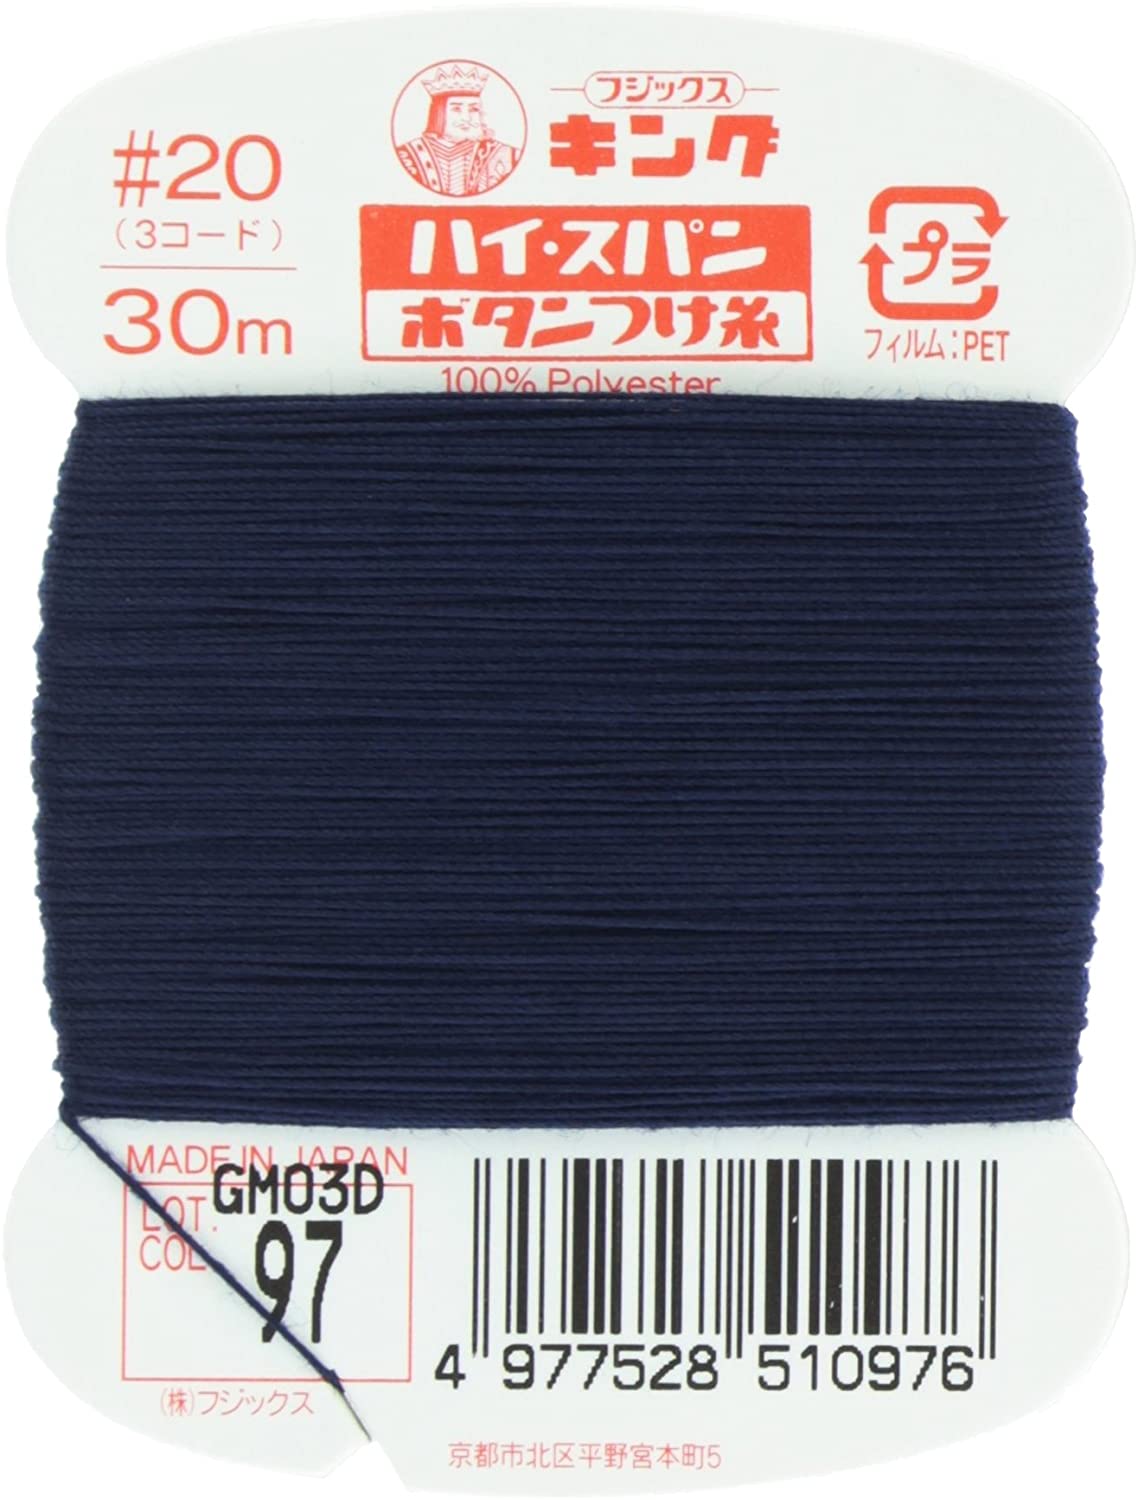 FK51-97 ハイスパンボタンつけ糸 #20 30m巻 (枚)